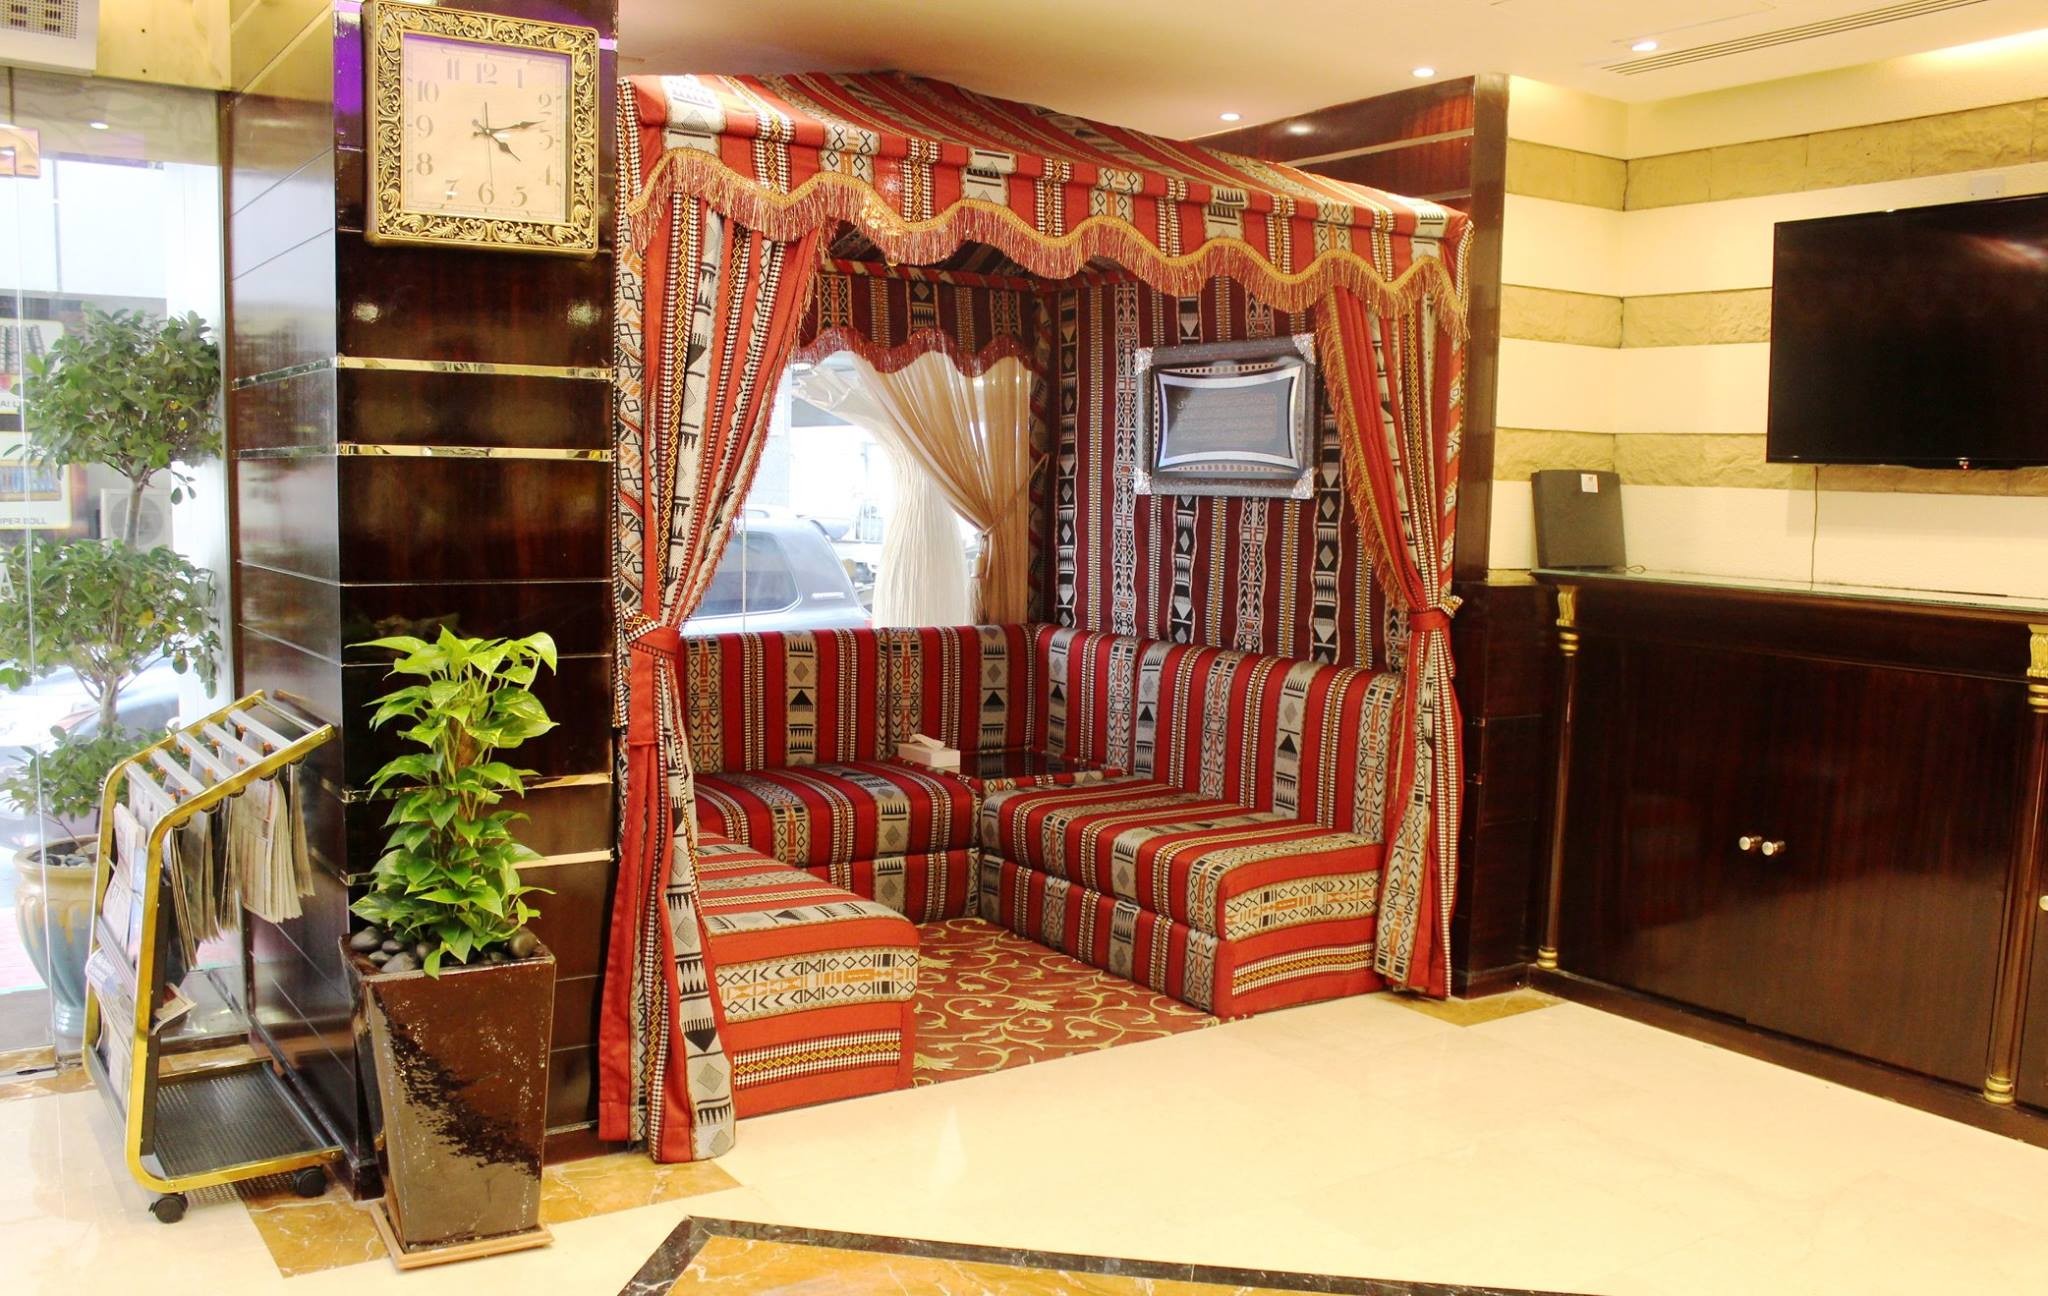 Al Khaleej Grand Hotel 3*